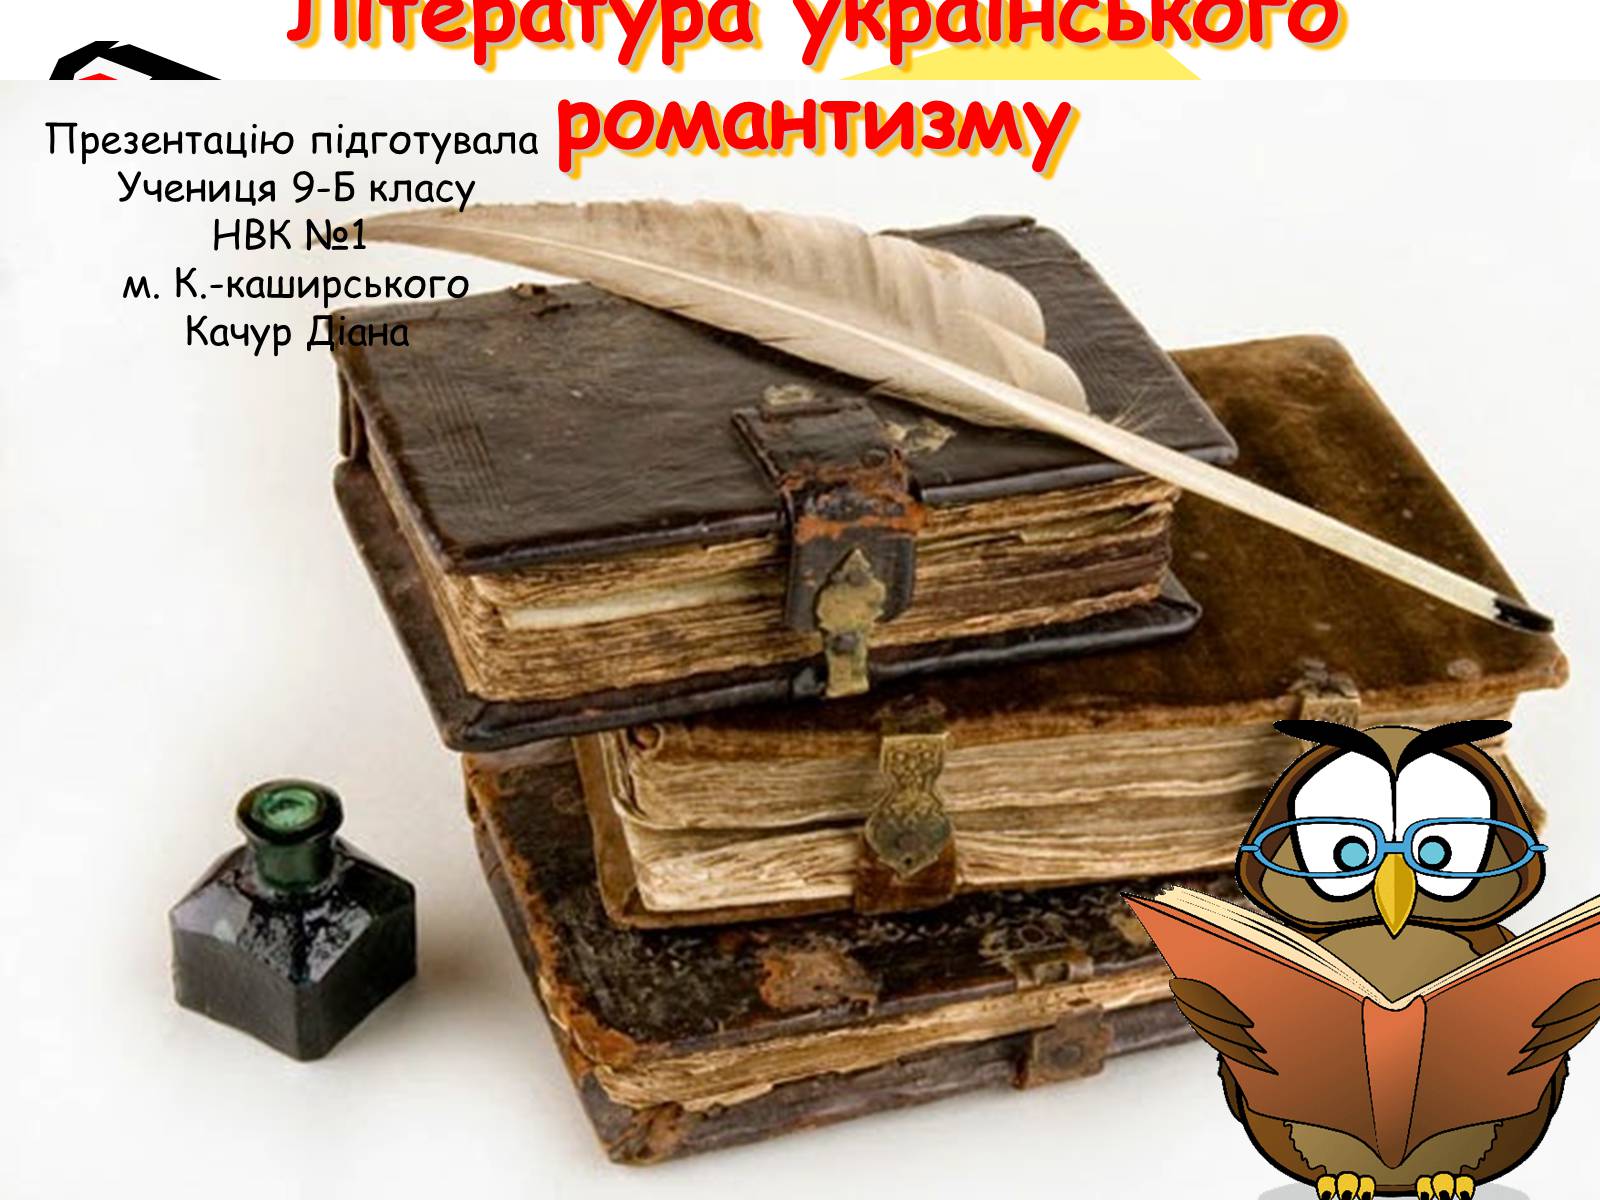 Реферат: Неоромантизм української літератури